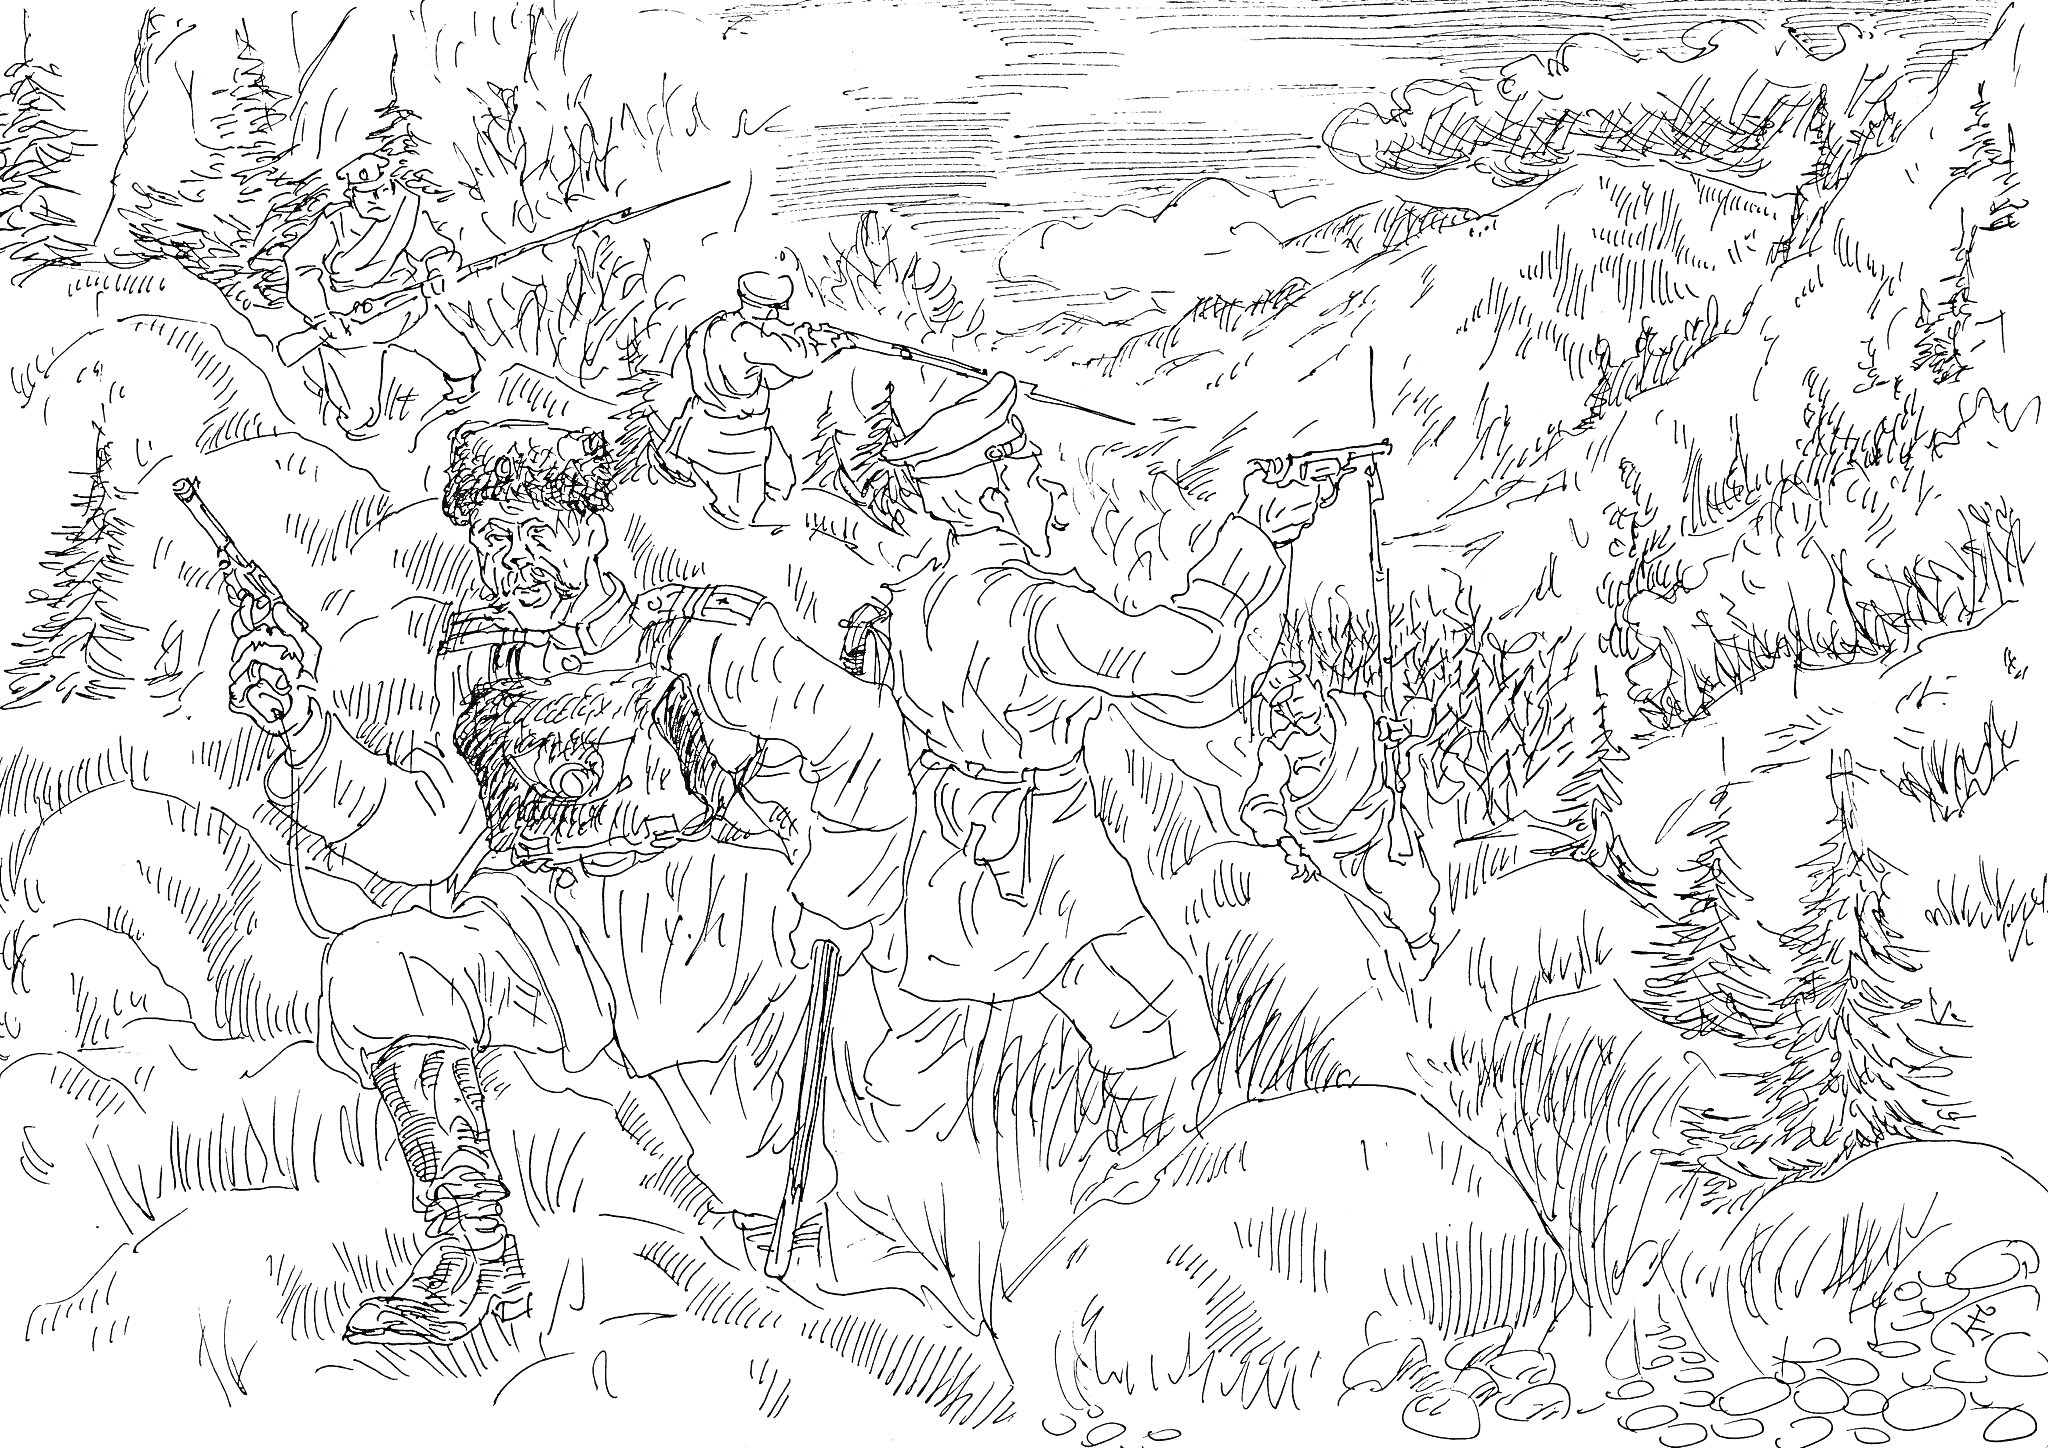 Бородинское сражение – бой солдат на холмистой местности среди деревьев и гор. На переднем плане двое солдат ведут огонь, один из которых в традиционной казачьей форме. На заднем плане видны другие бойцы и красивая горная природа.